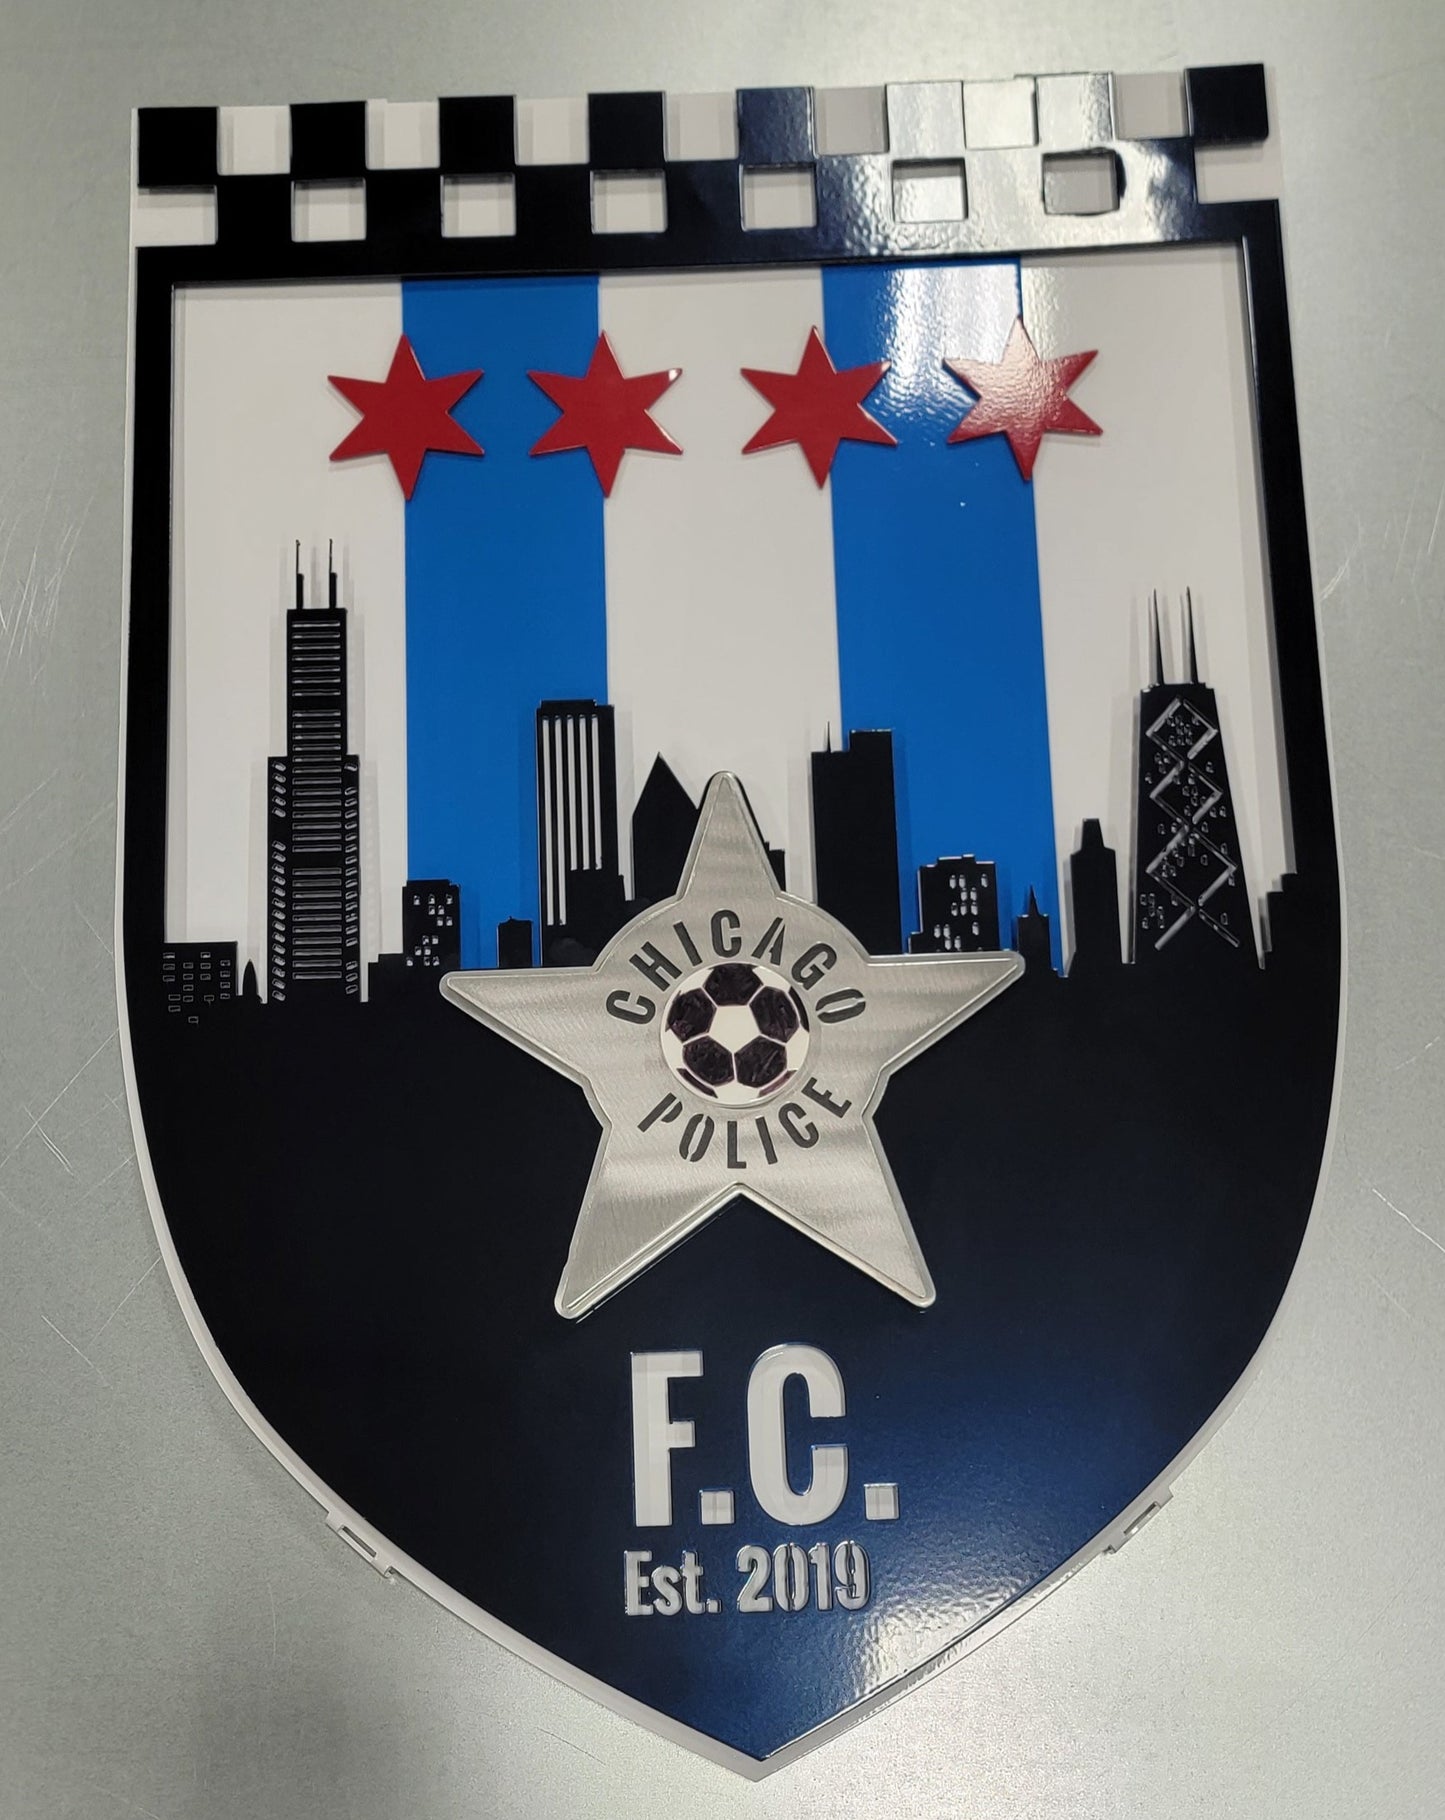 Chicago Police Futbol Club